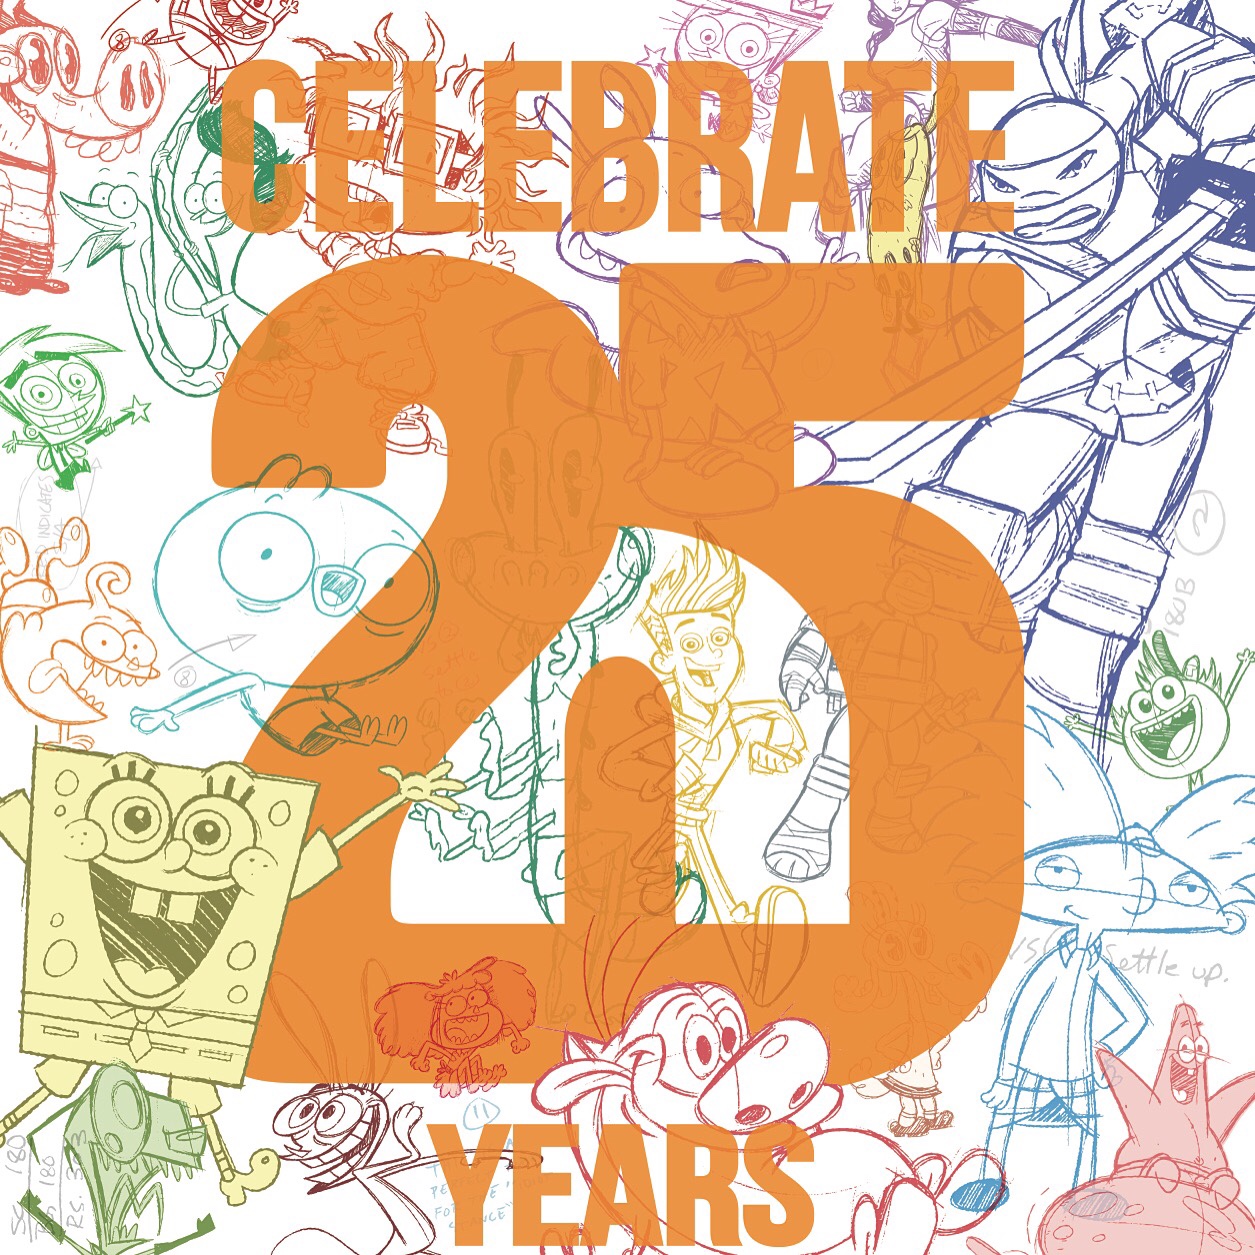 Nickelodeon Animation 25th Anniversary